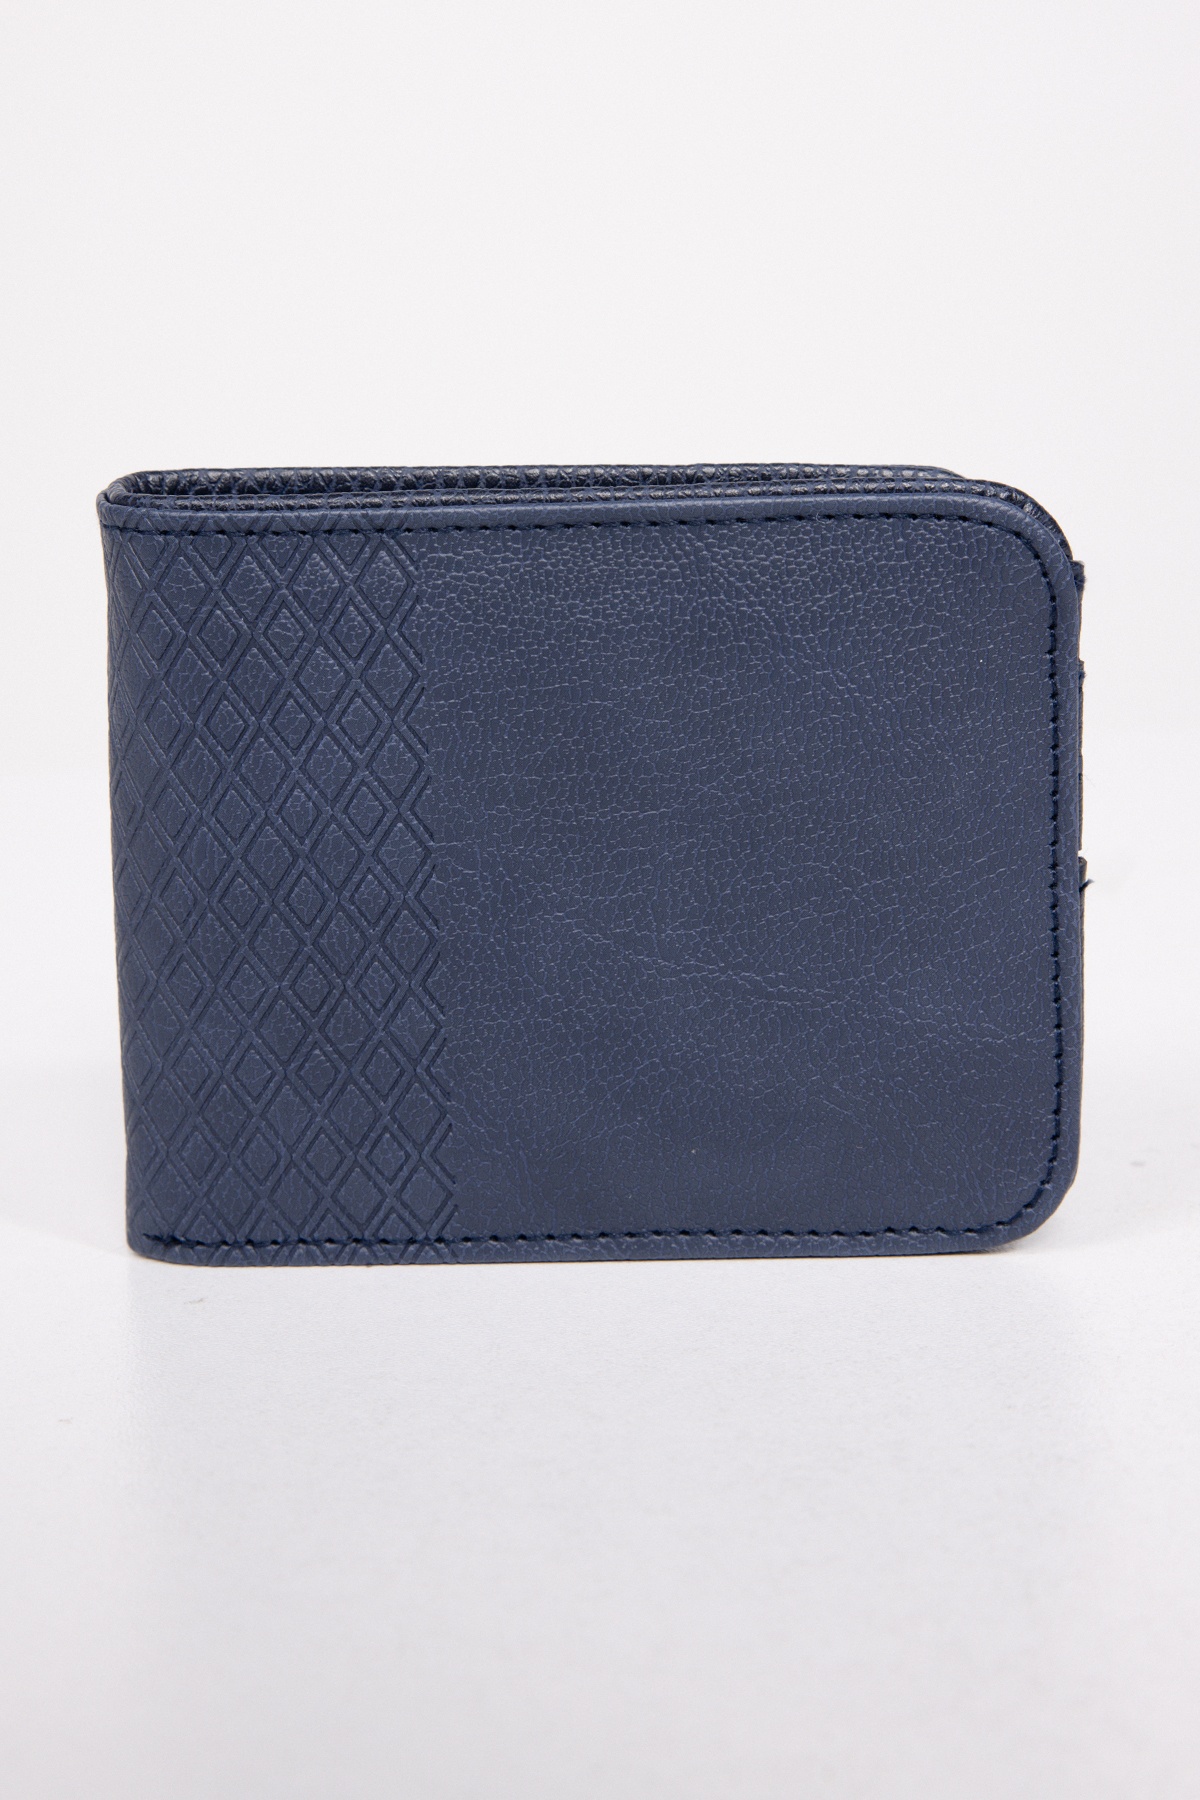  Navy Blue Wallet